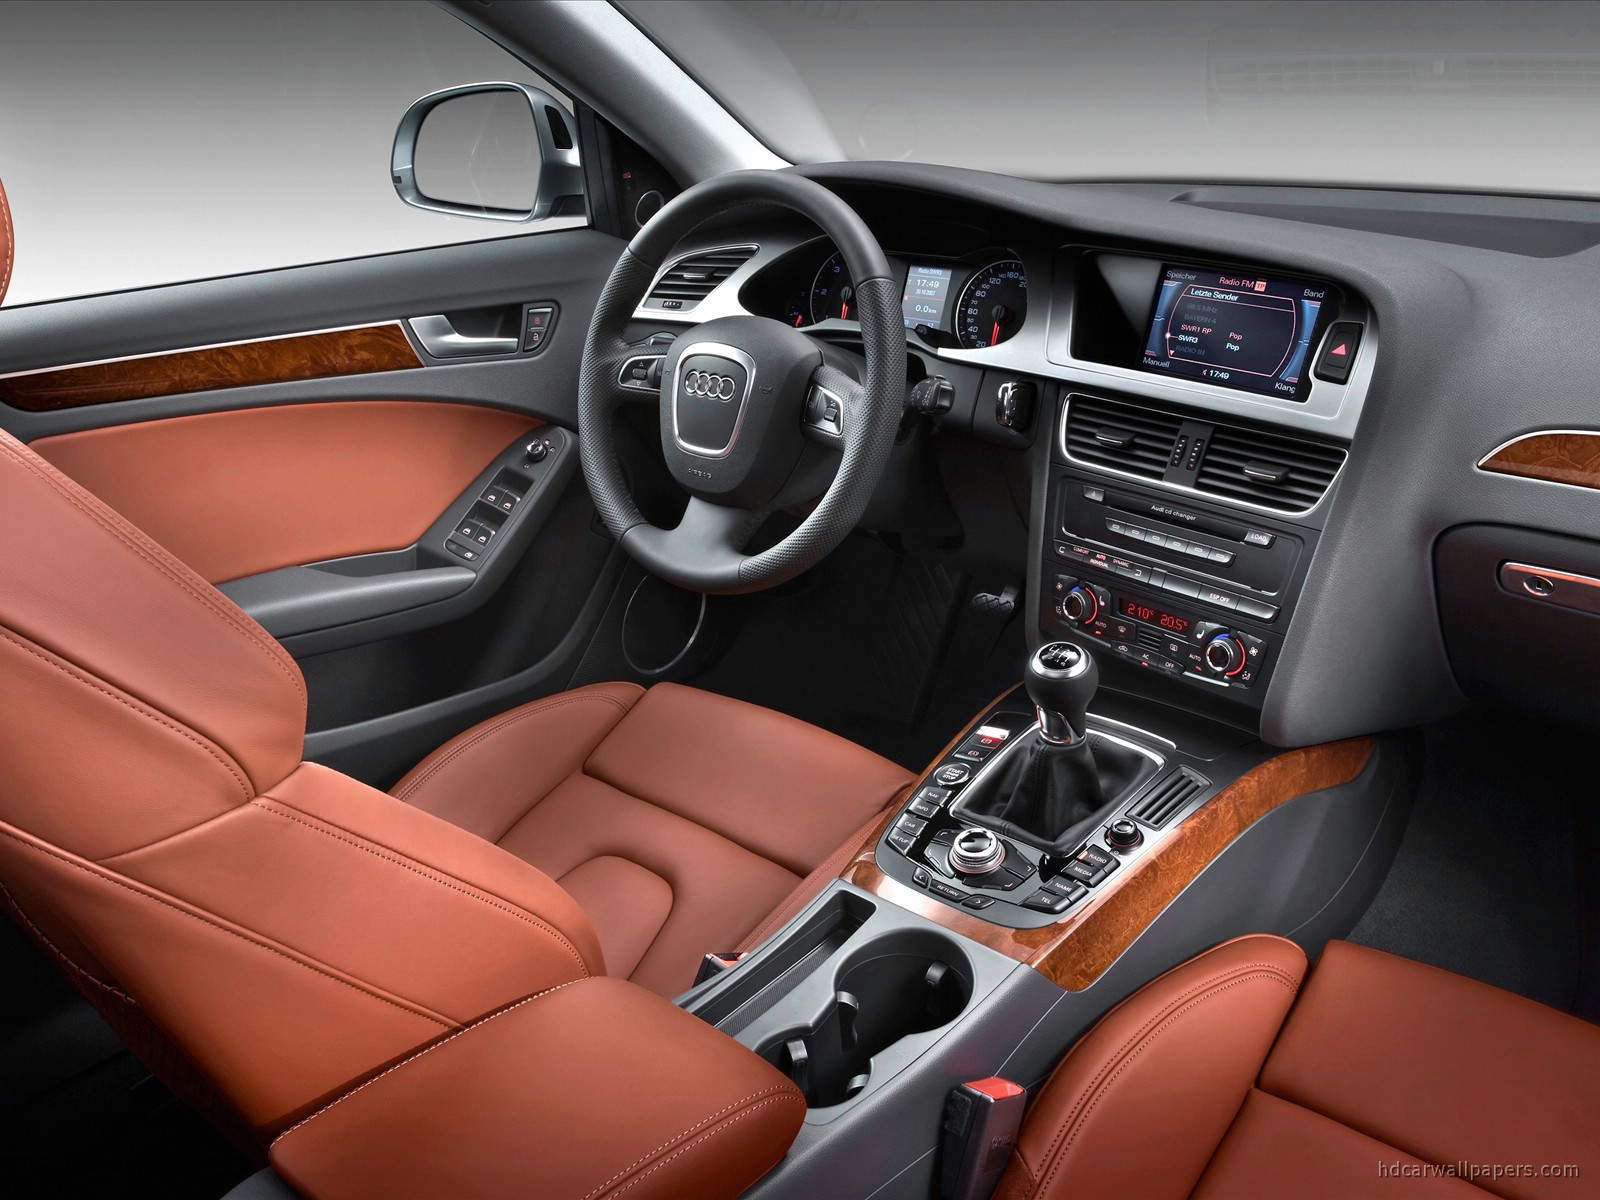 Audi A4 Avant Interior - Audi A4 3.0 Tdi Quattro 2008 , HD Wallpaper & Backgrounds